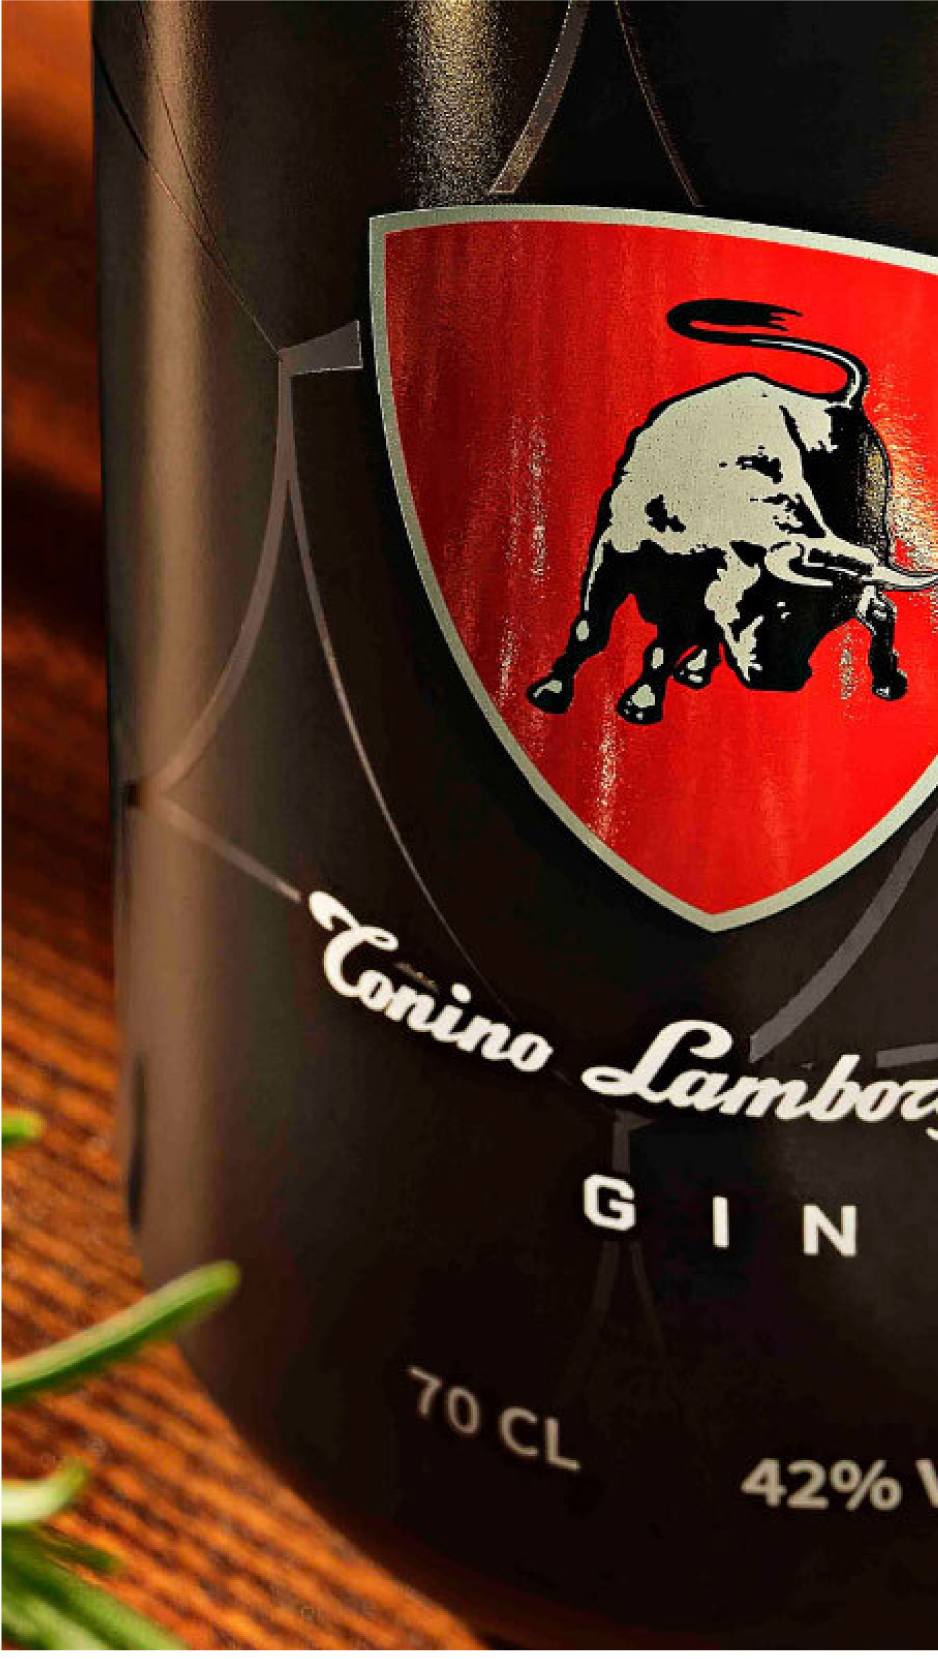 TONINO LAMBORGHINI - Un gin creato a immagine e somiglianza del suo brand, posizionato nei mercati internazionali come espressione del Made in Italy di eccellenza e di alta gamma.